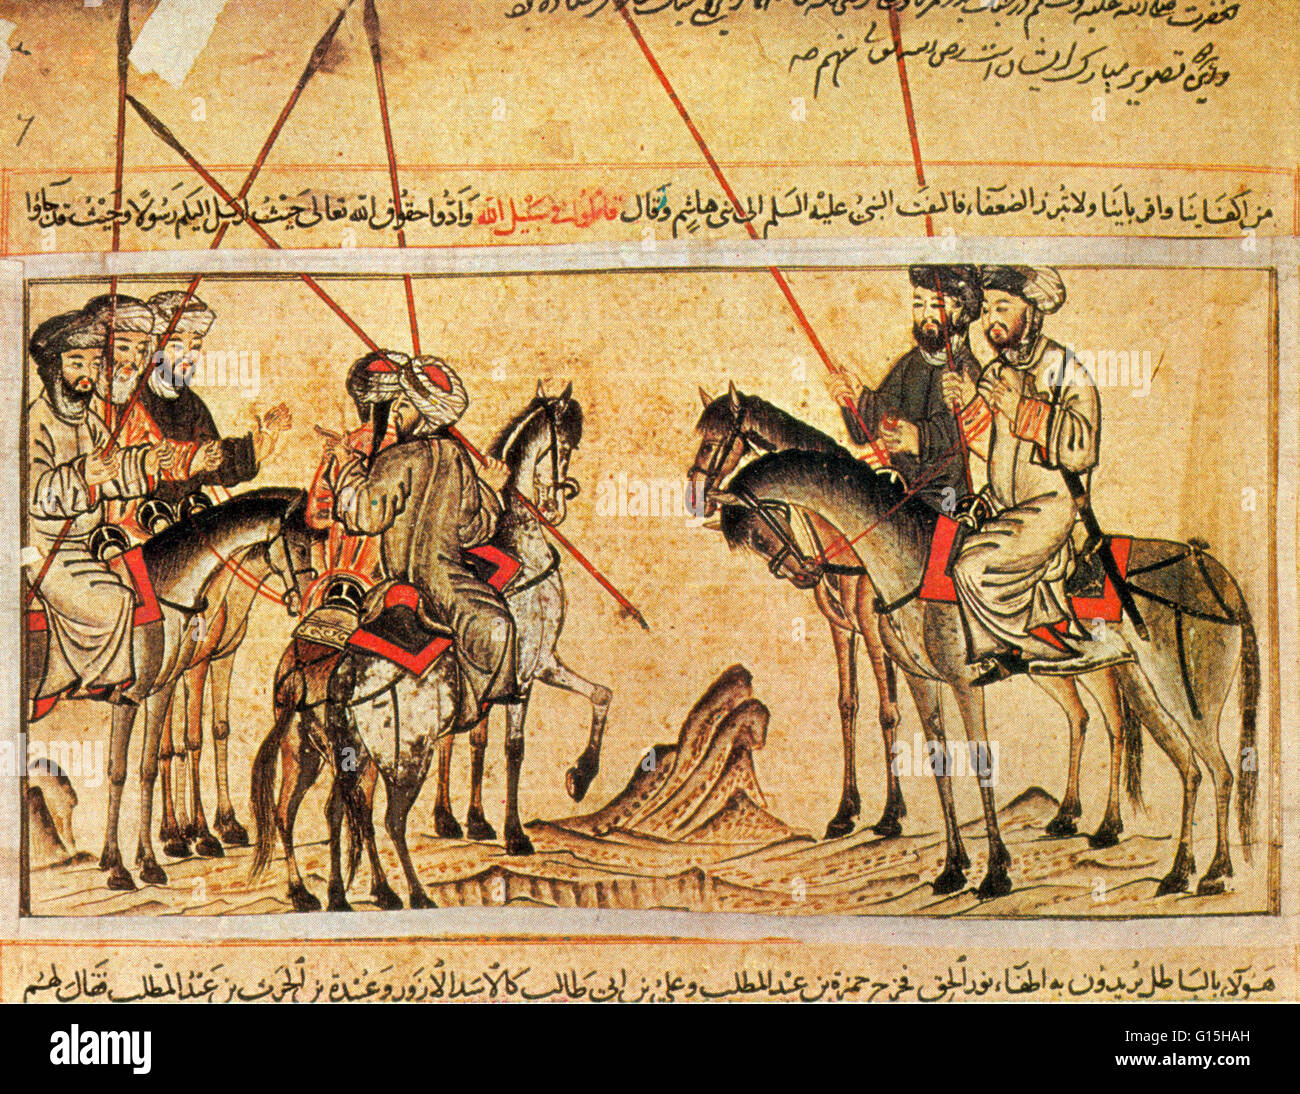 Jami al-Tawarikh (Universalgeschichte) ist ein iranischer Werk der Literatur und Geschichte von Rashid-al-Din Hamadani zu Beginn des 14. Jahrhunderts geschrieben. Diese Miniaturen erfolgten überwiegend in rot- und Blautöne, gehören zu den besten frühen islamischen Stockfoto